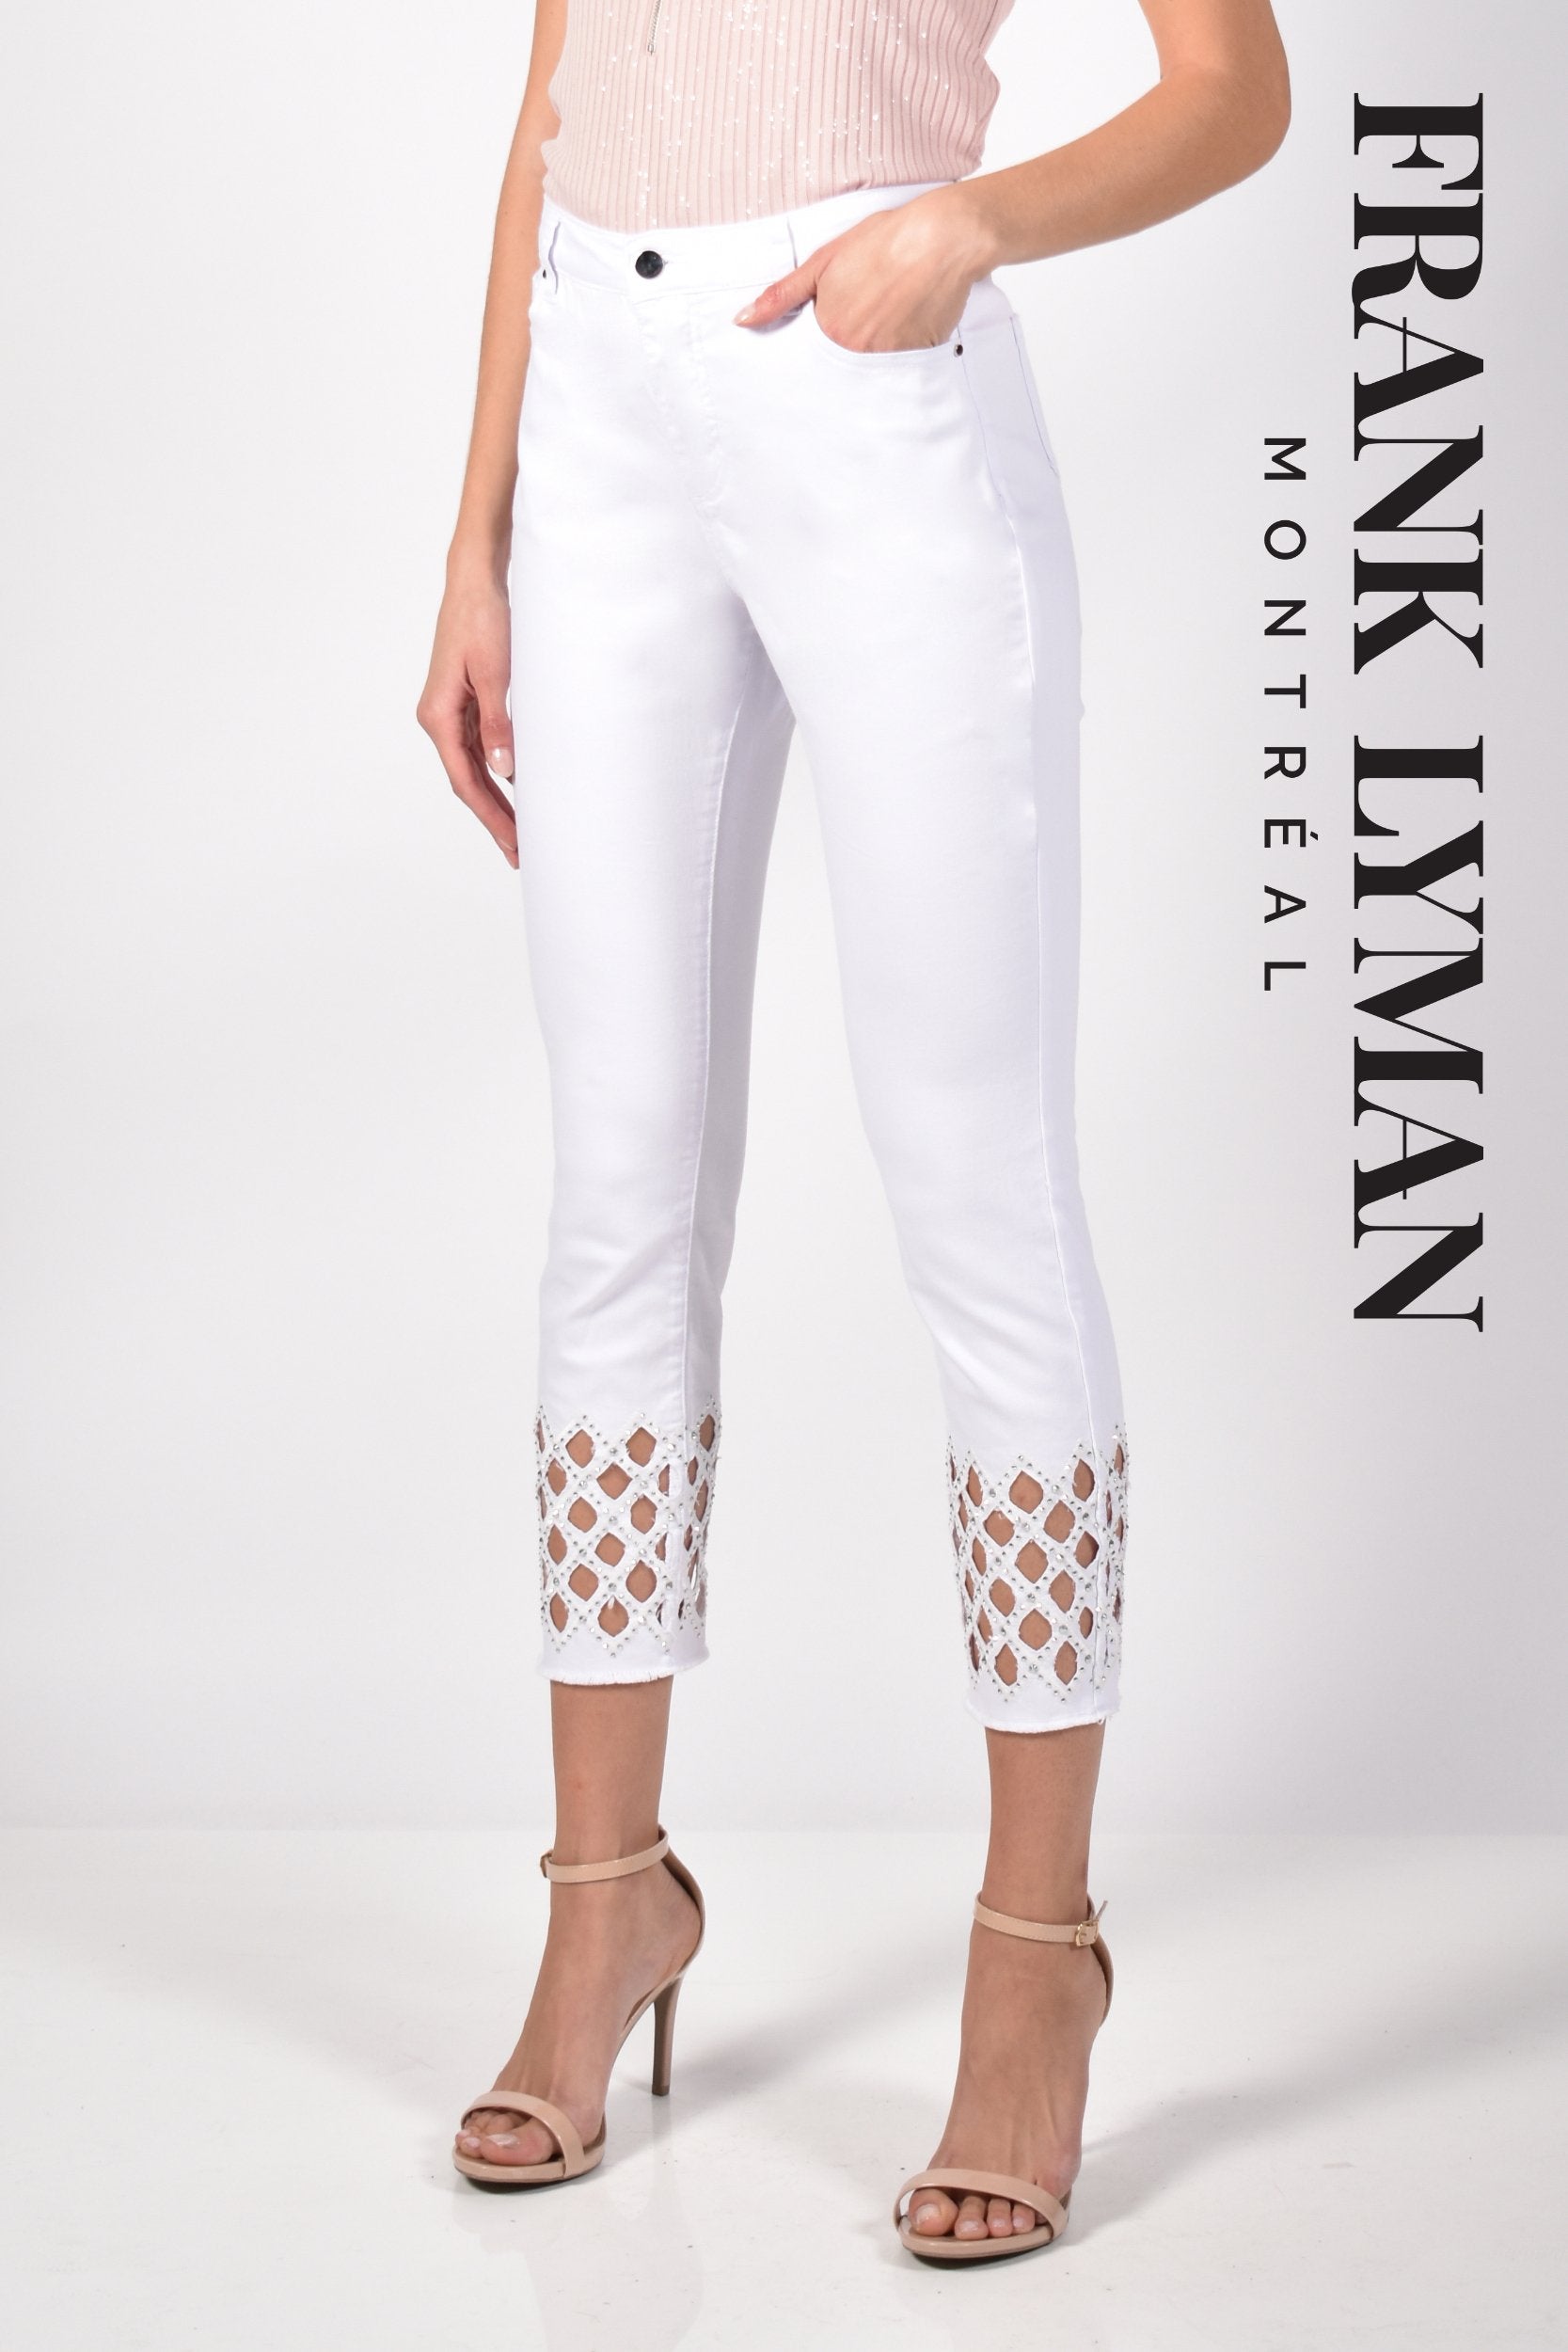 Jeans Frank Lyman - 211112U white - Boutique Vvög, vêtements mode pour homme & femme